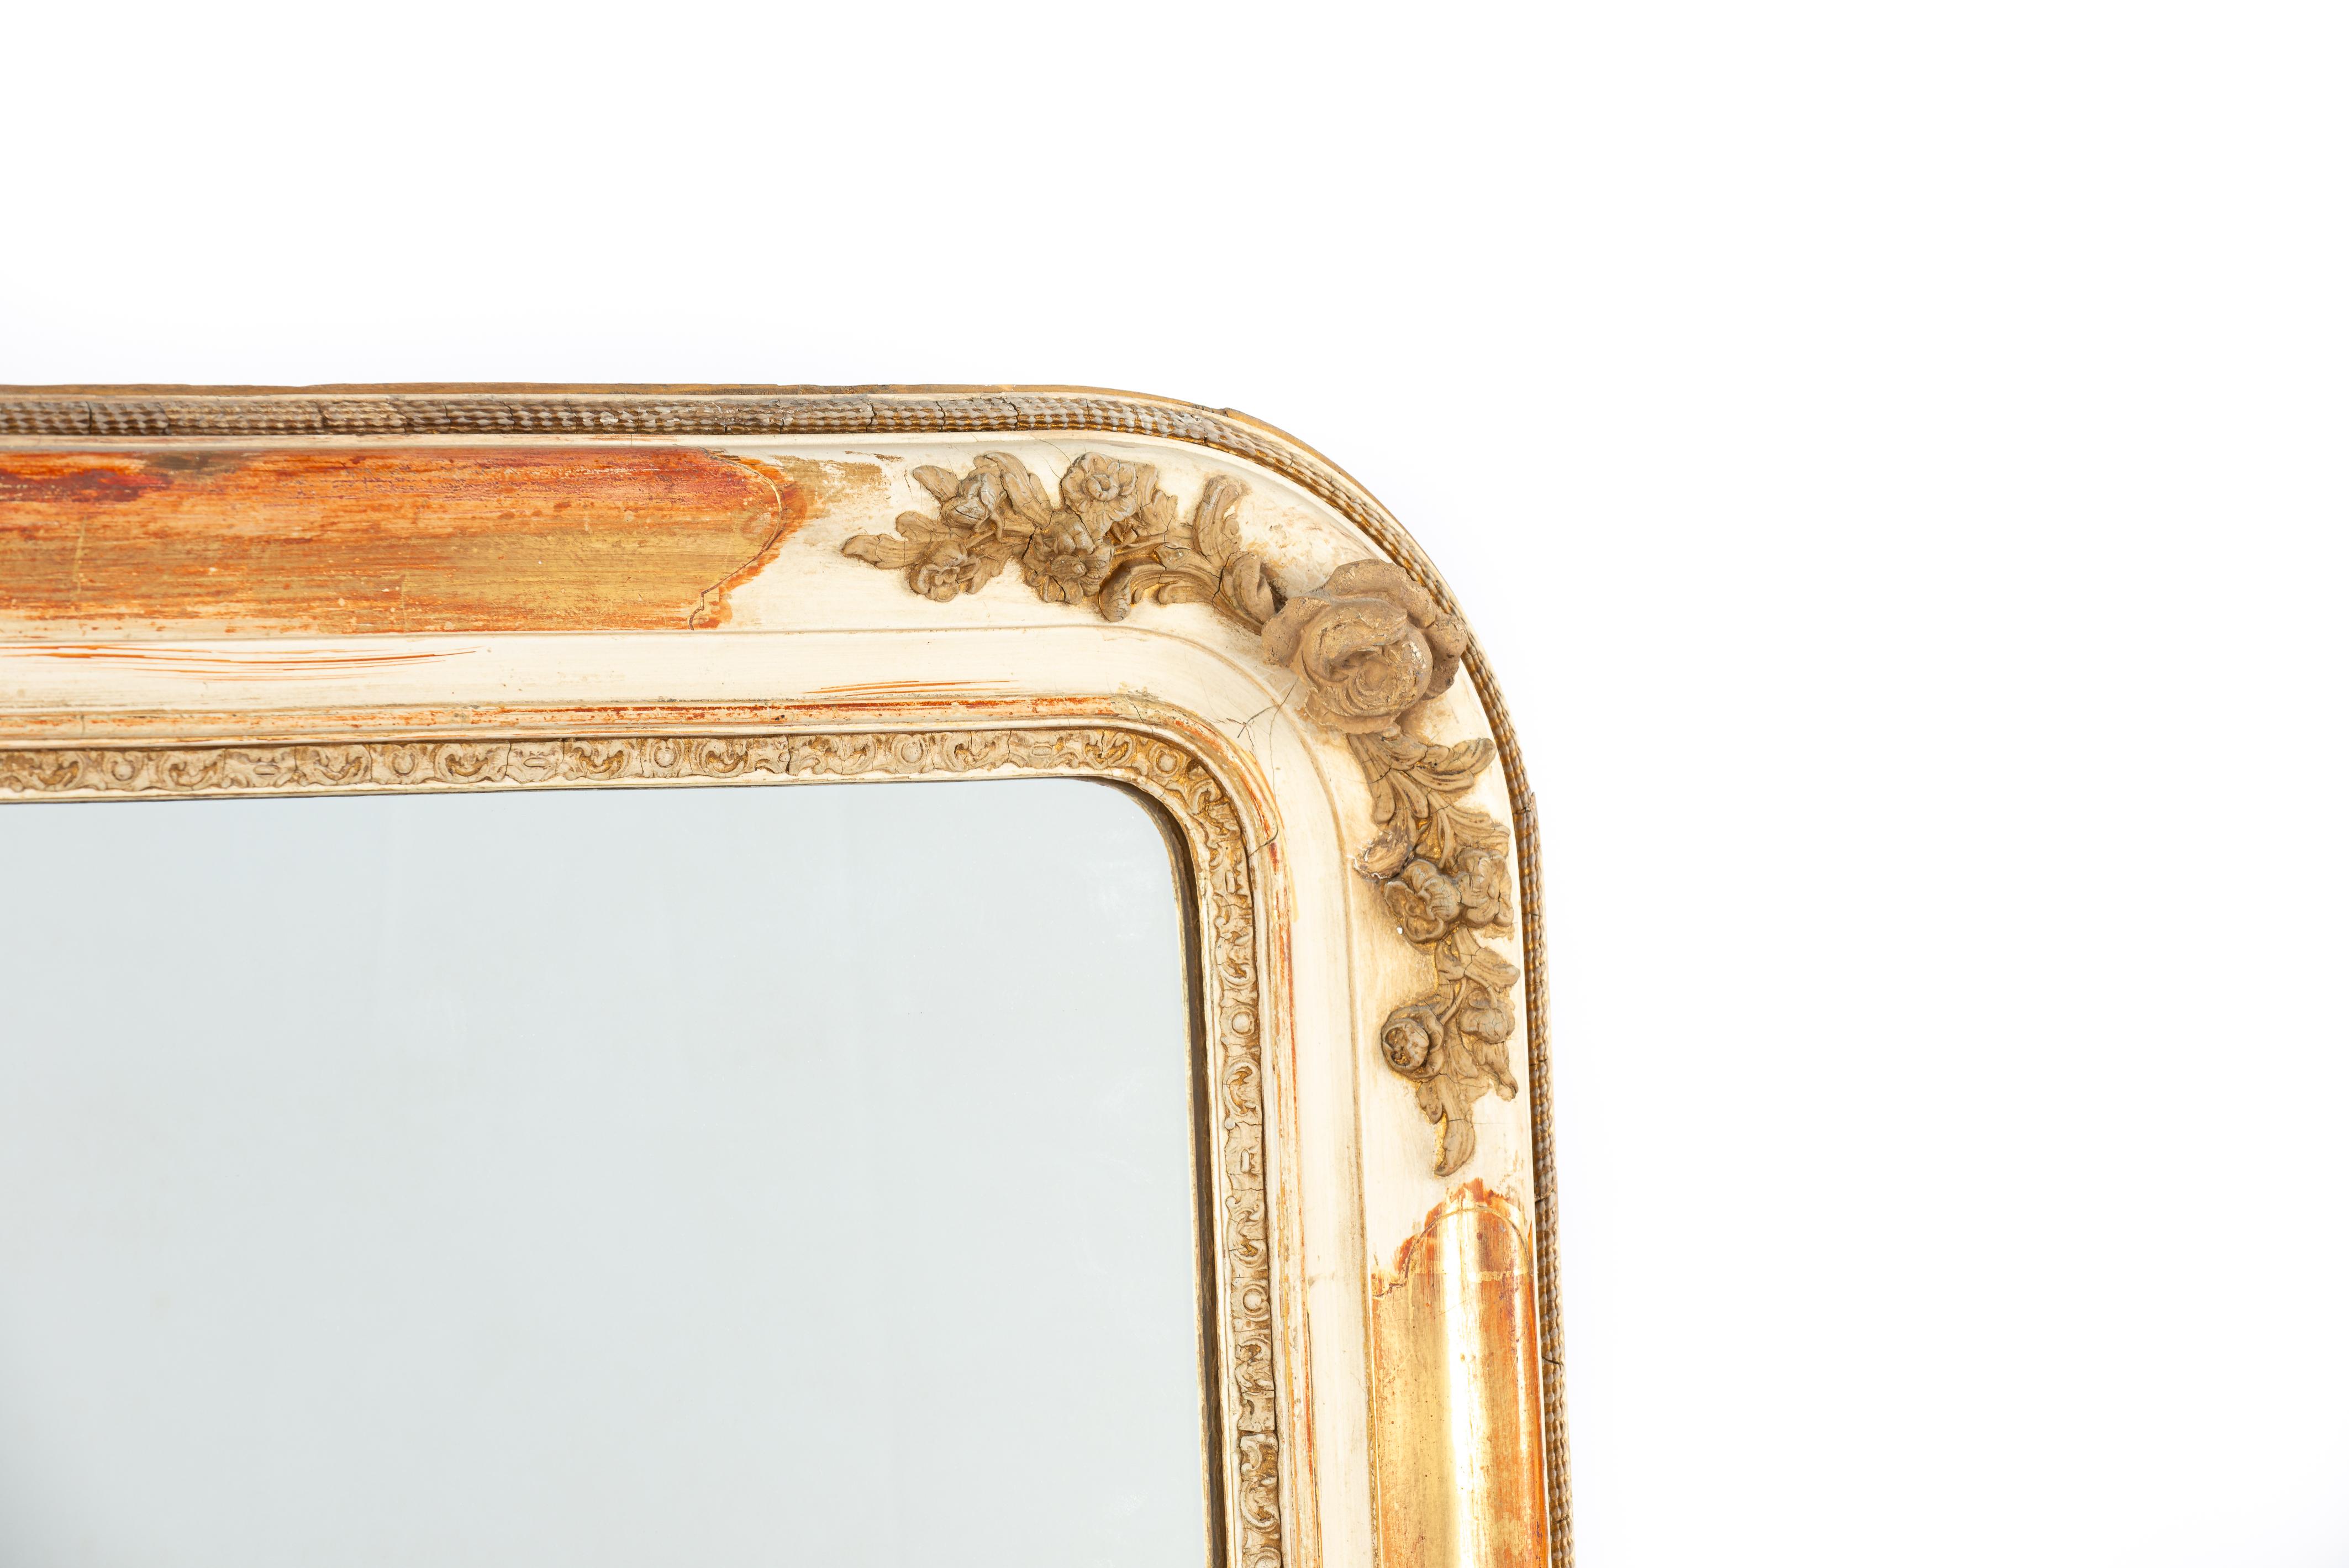 Dieser antike Kaminsims-Spiegel wurde Mitte des 19. Jahrhunderts in Südfrankreich hergestellt. Der Spiegel hat oben viertelgerundete Ecken, die für den Louis-Philippe-Stil charakteristisch sind. Der Rahmen ist aus massivem Kiefernholz gefertigt und